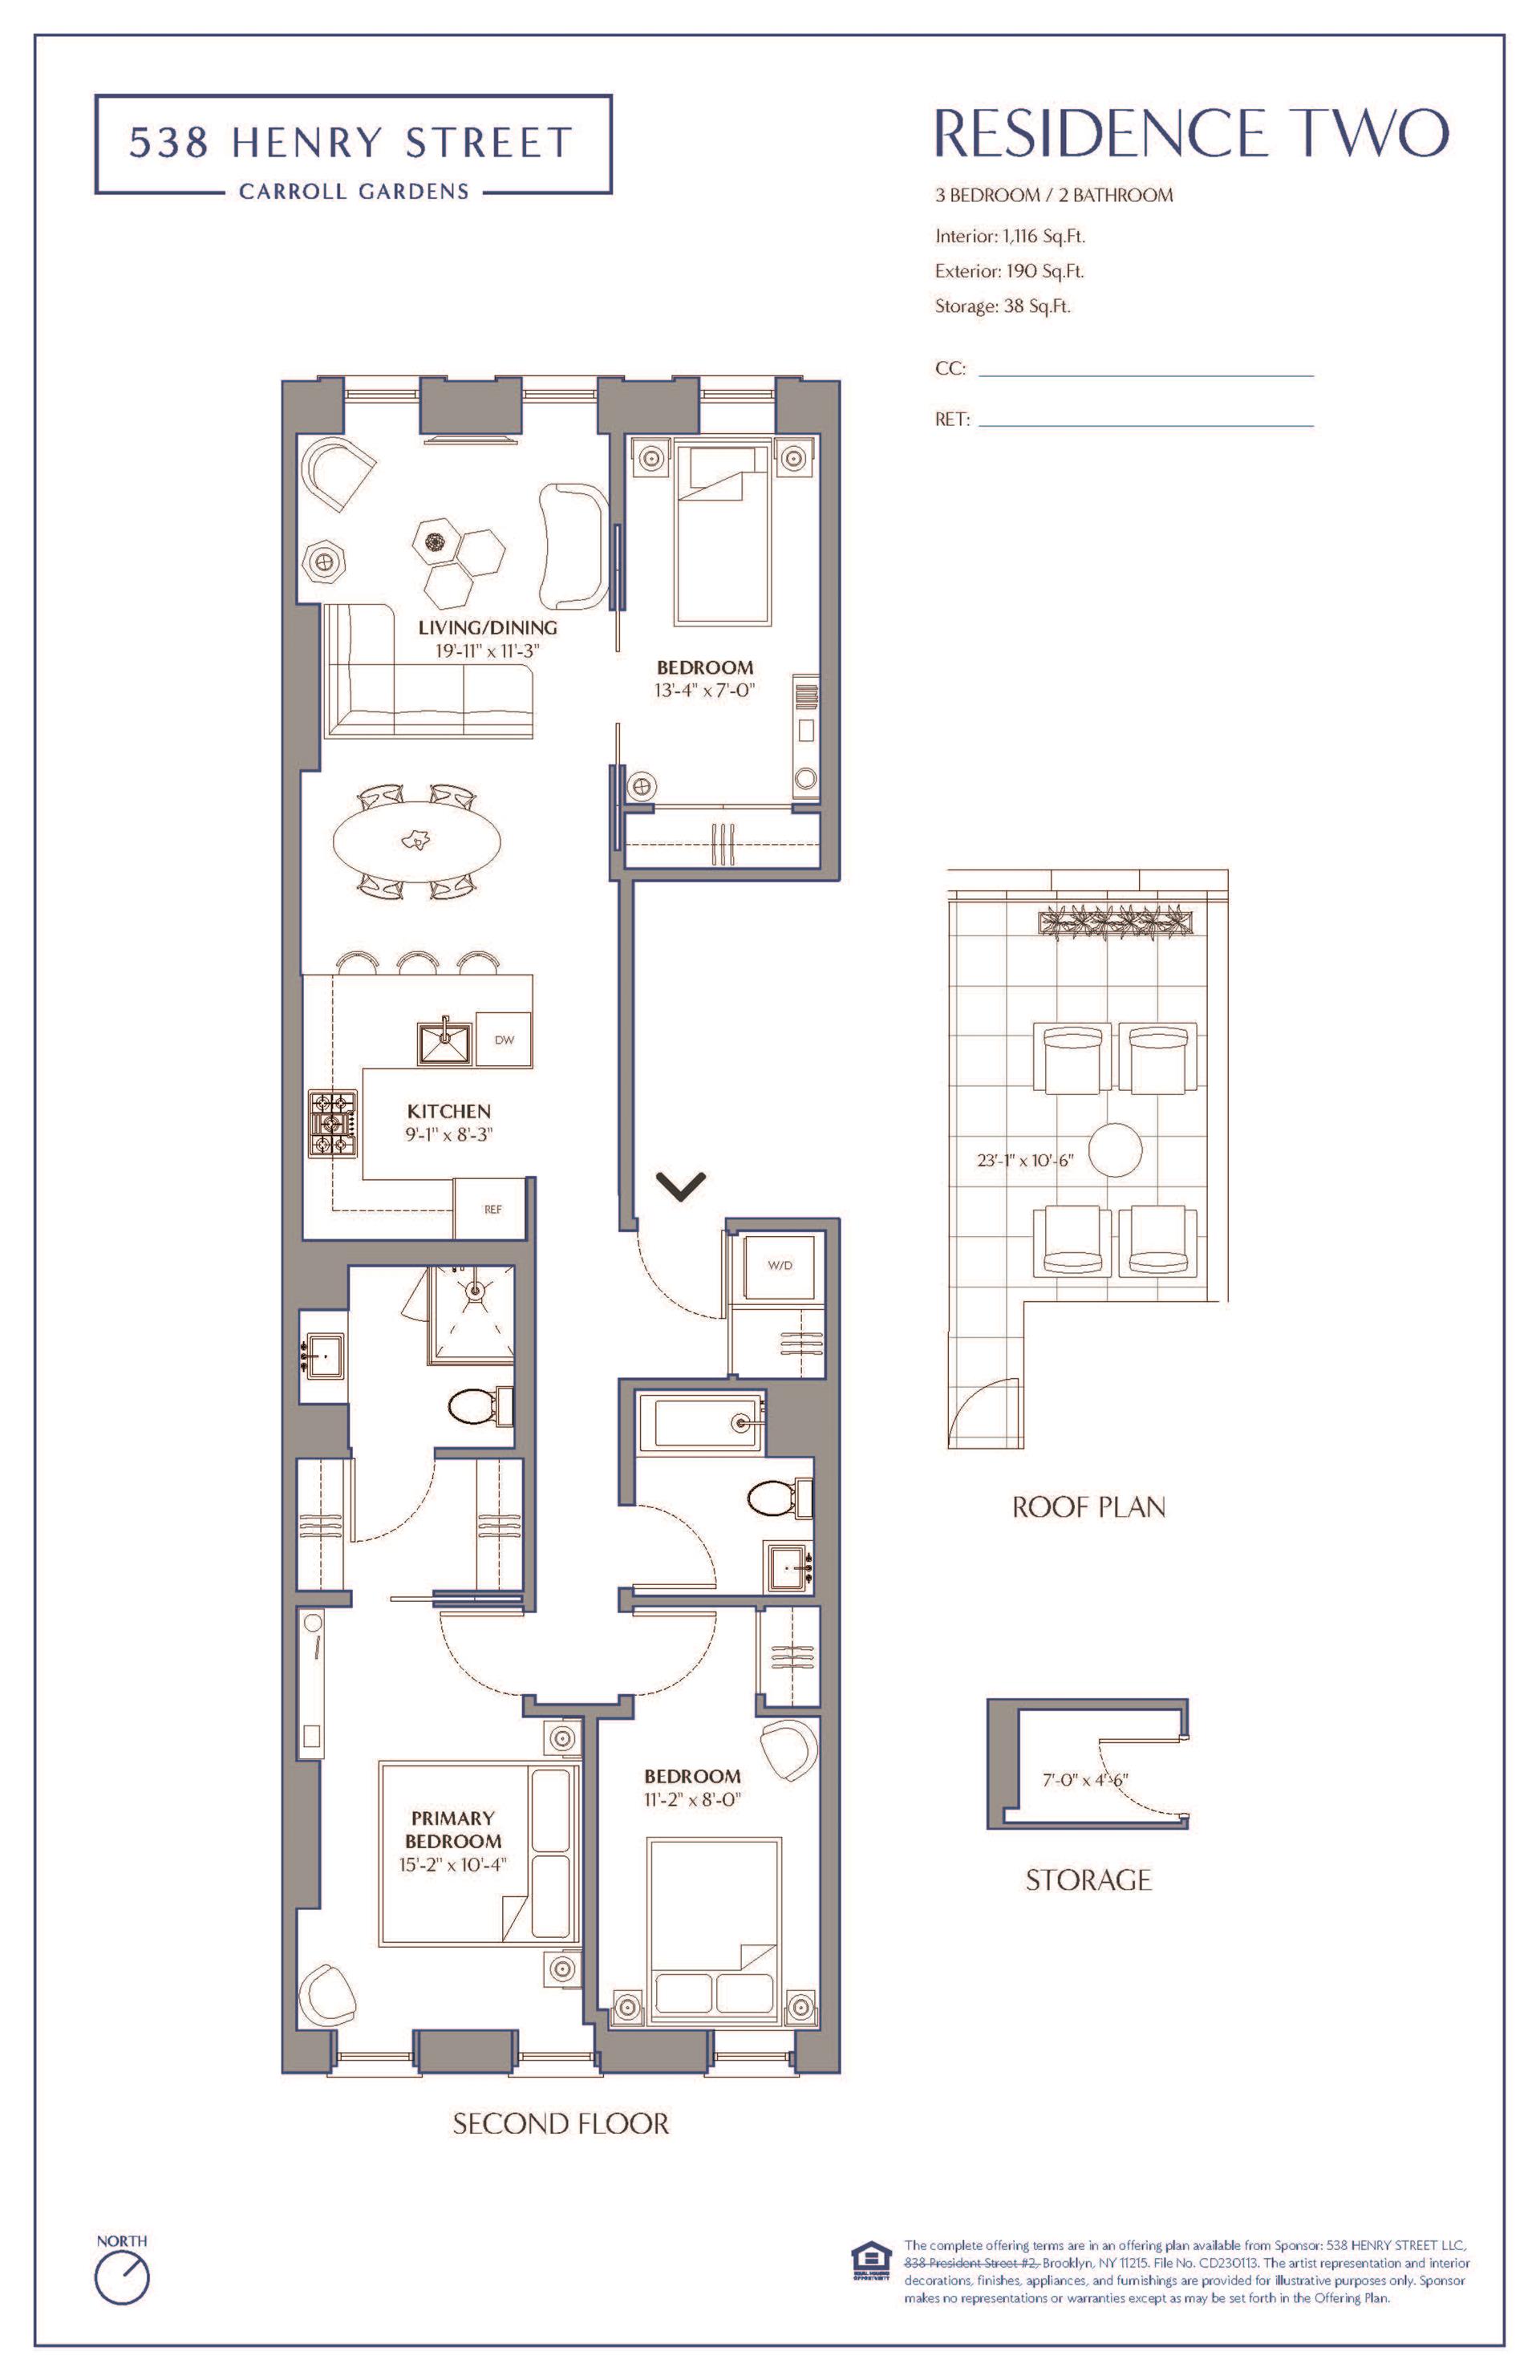 Floorplan for 538 Henry Street, 2